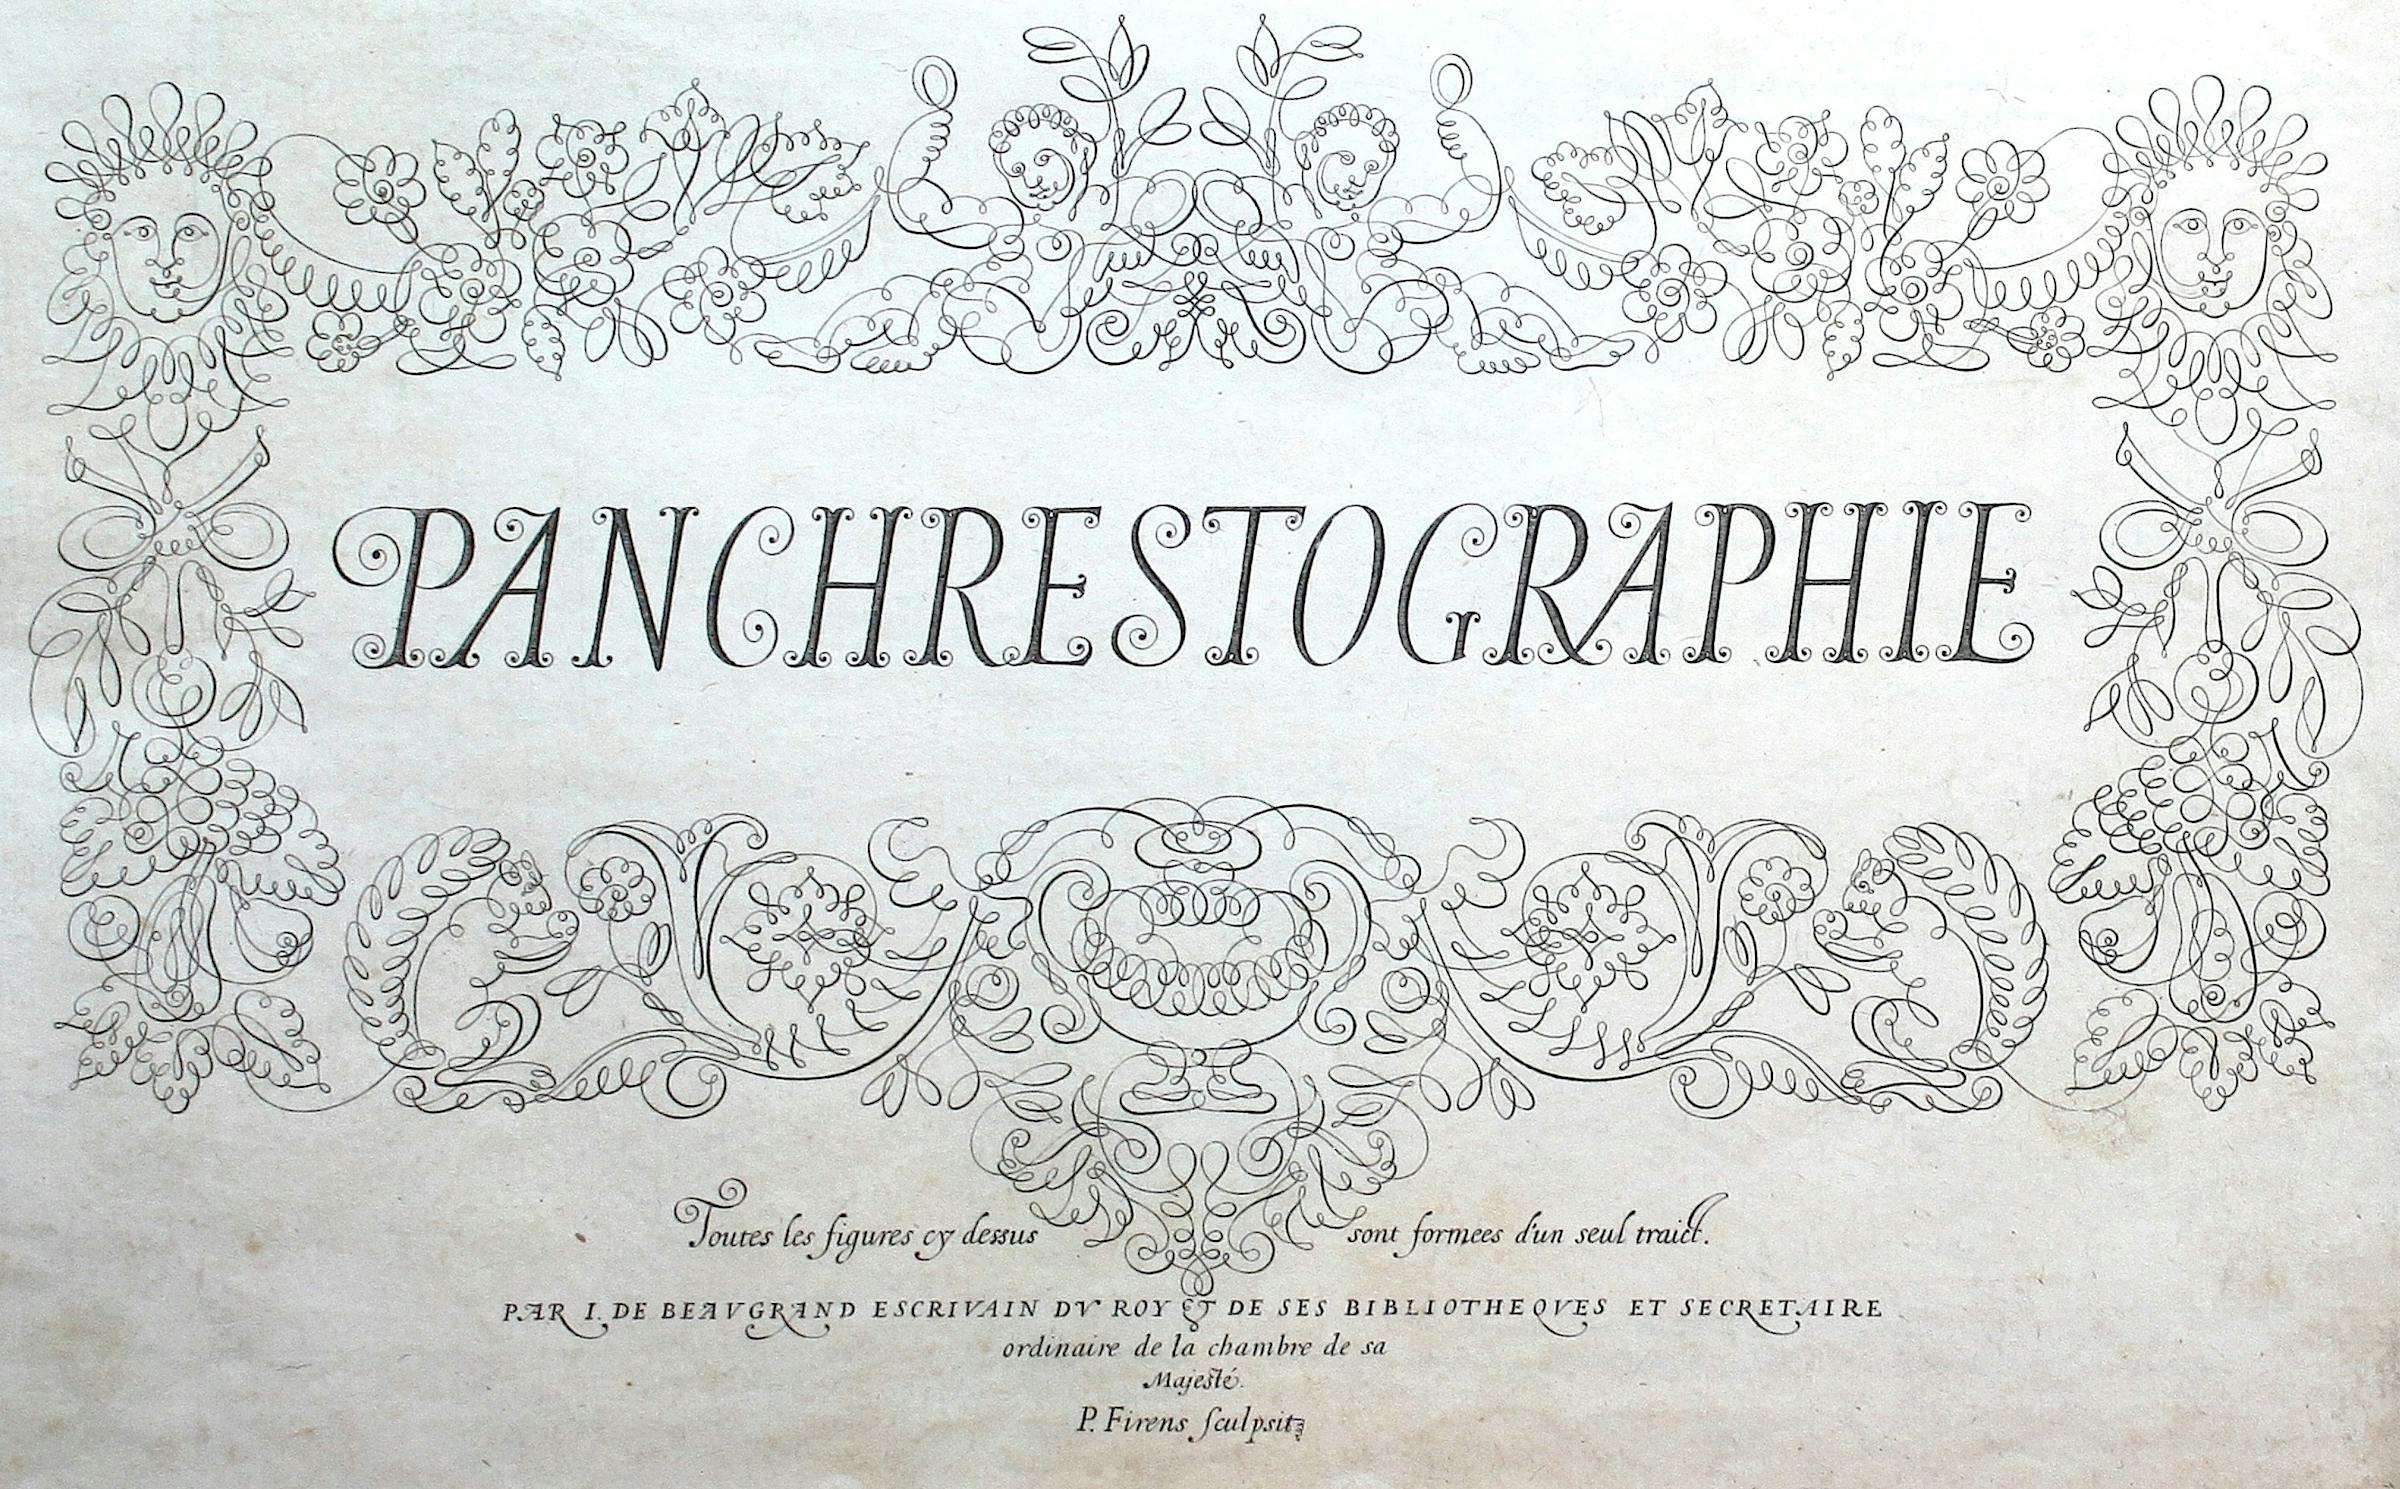 Jean de Beaugrand’s 1604 Panchrestographie